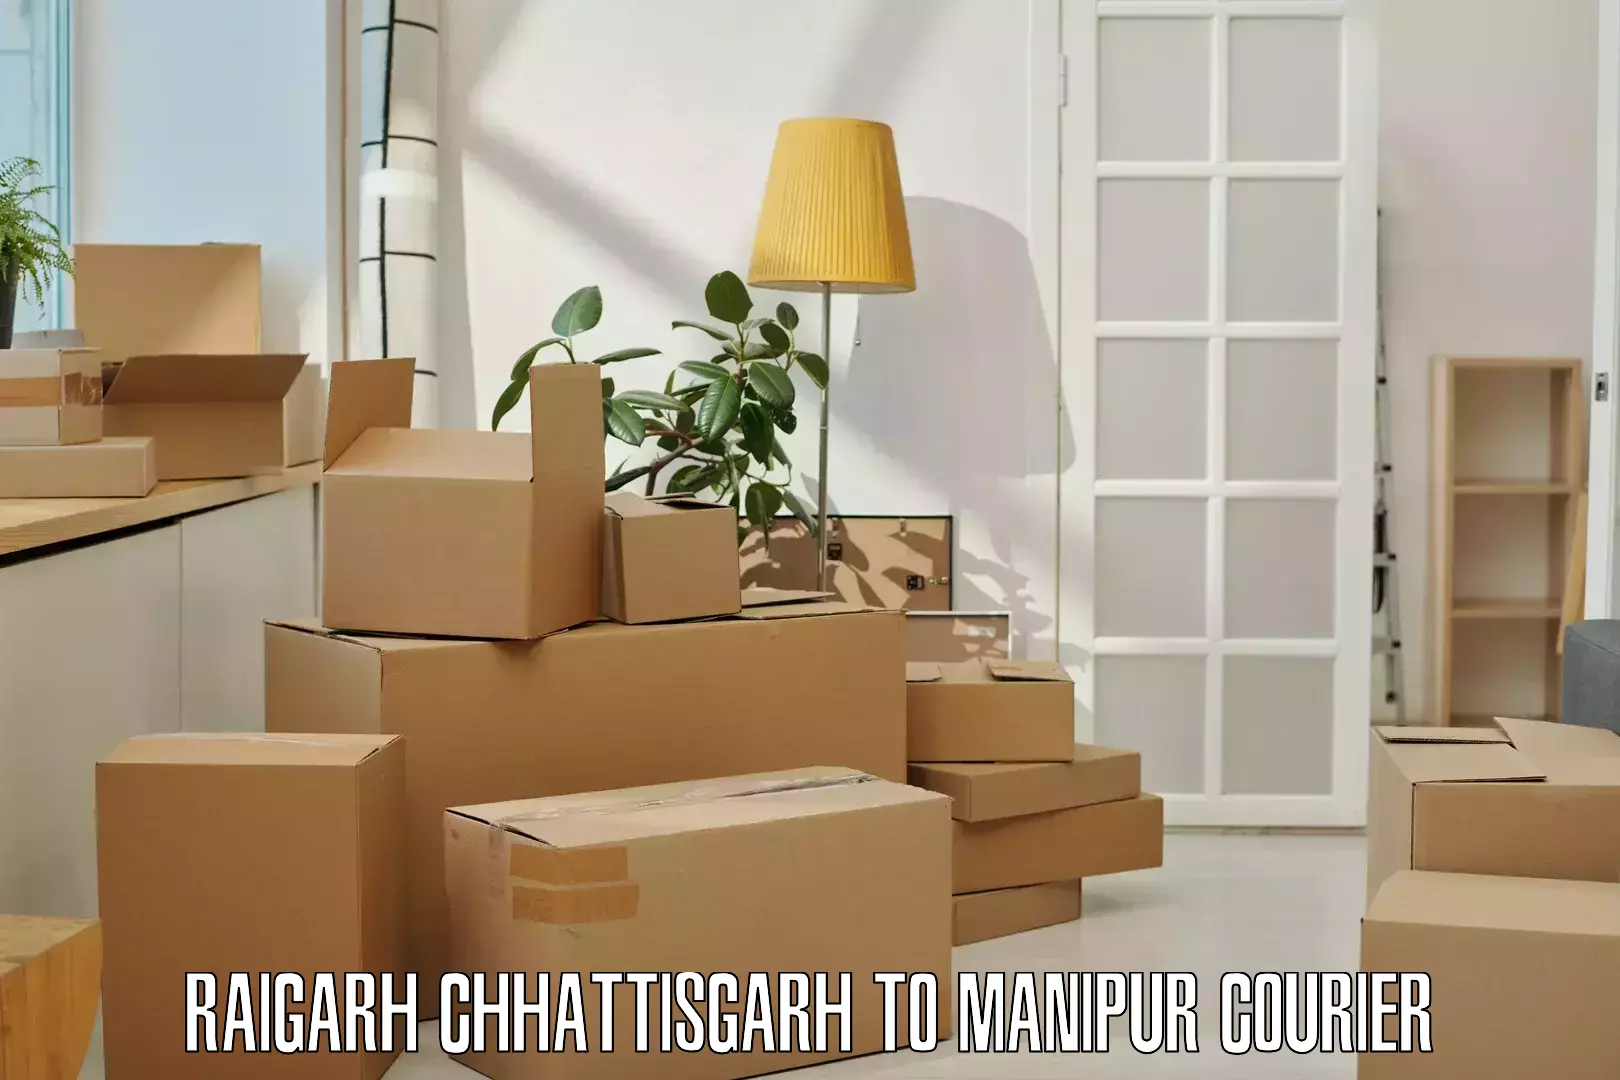 Next-generation courier services Raigarh Chhattisgarh to Chandel